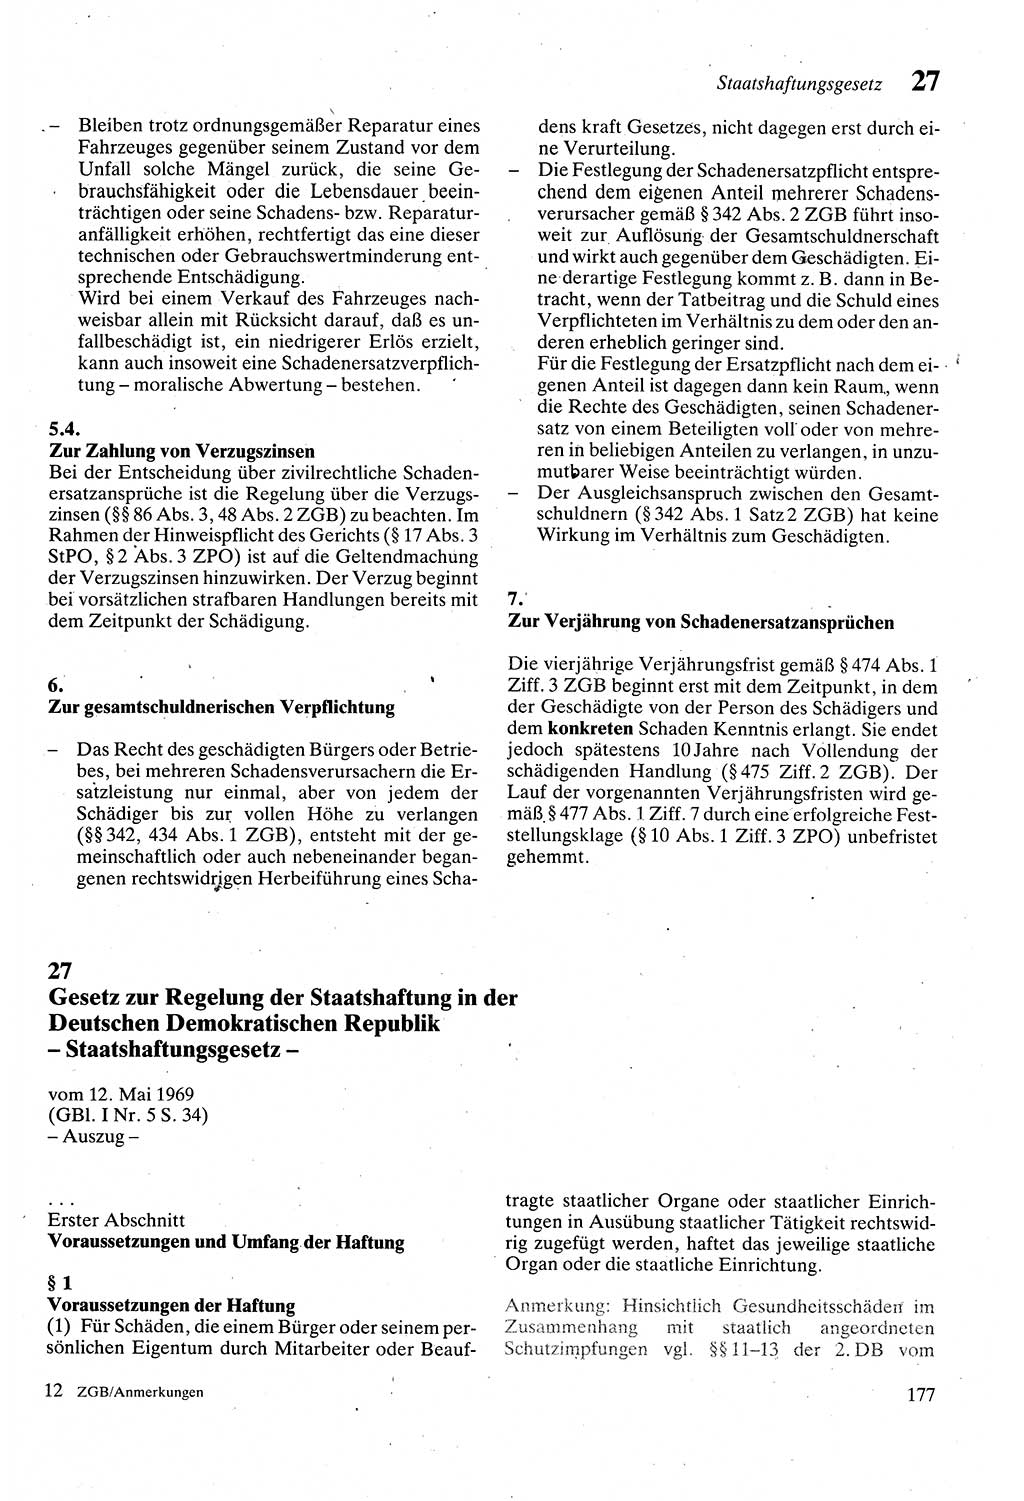 Zivilgesetzbuch (ZVG) sowie angrenzende Gesetze und Bestimmungen [Deutsche Demokratische Republik (DDR)] 1975, Seite 177 (ZGB Ges. Best. DDR 1975, S. 177)